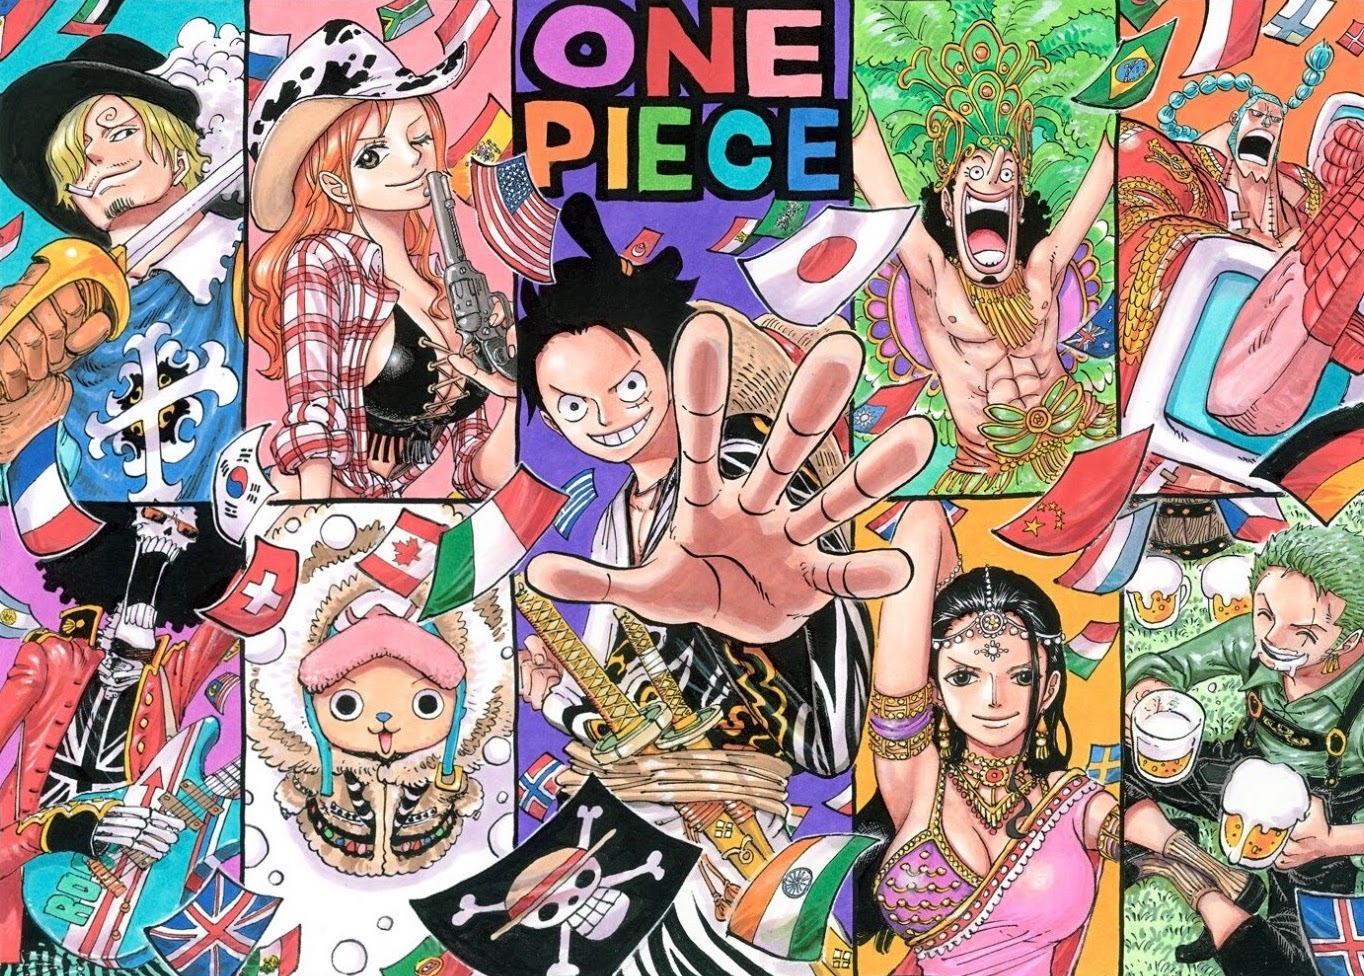 One Piece 大迫力 麦わらの一味 カッコイイ壁紙まとめ ワンピース 2 4 Renote リノート